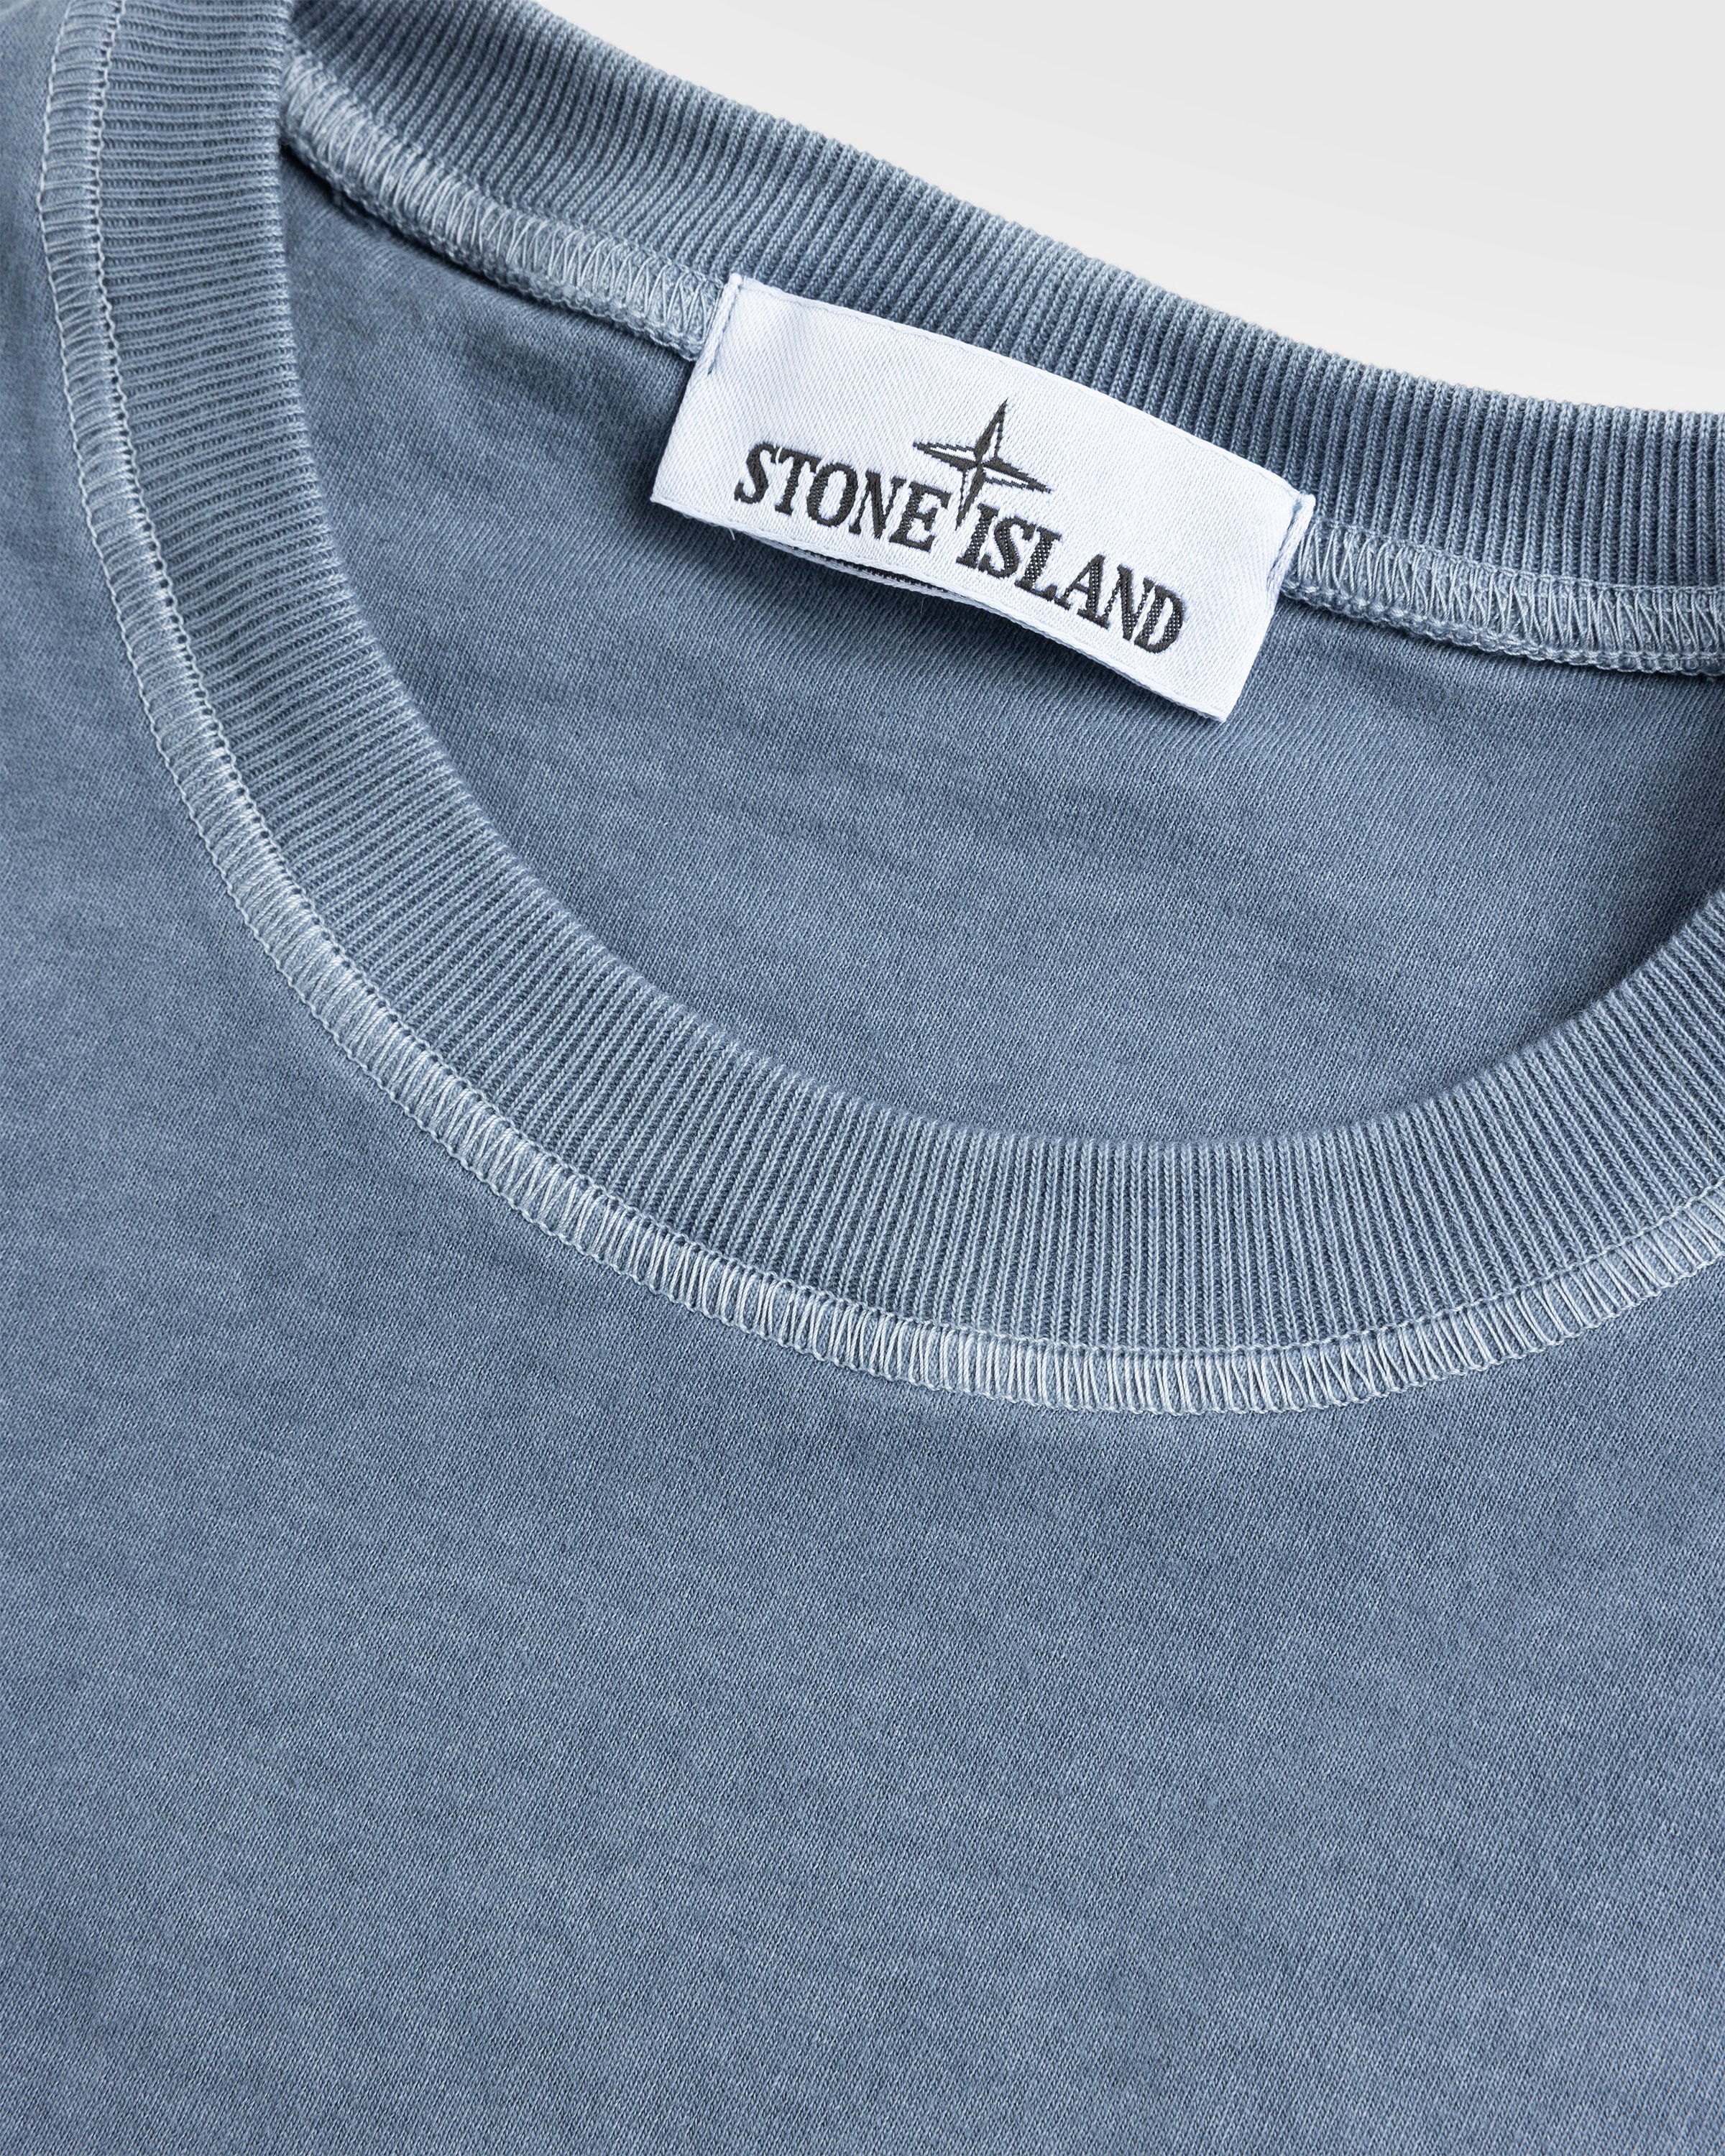 Stone Island - T SHIRT DARK BLUE - Clothing - Blue - Image 7